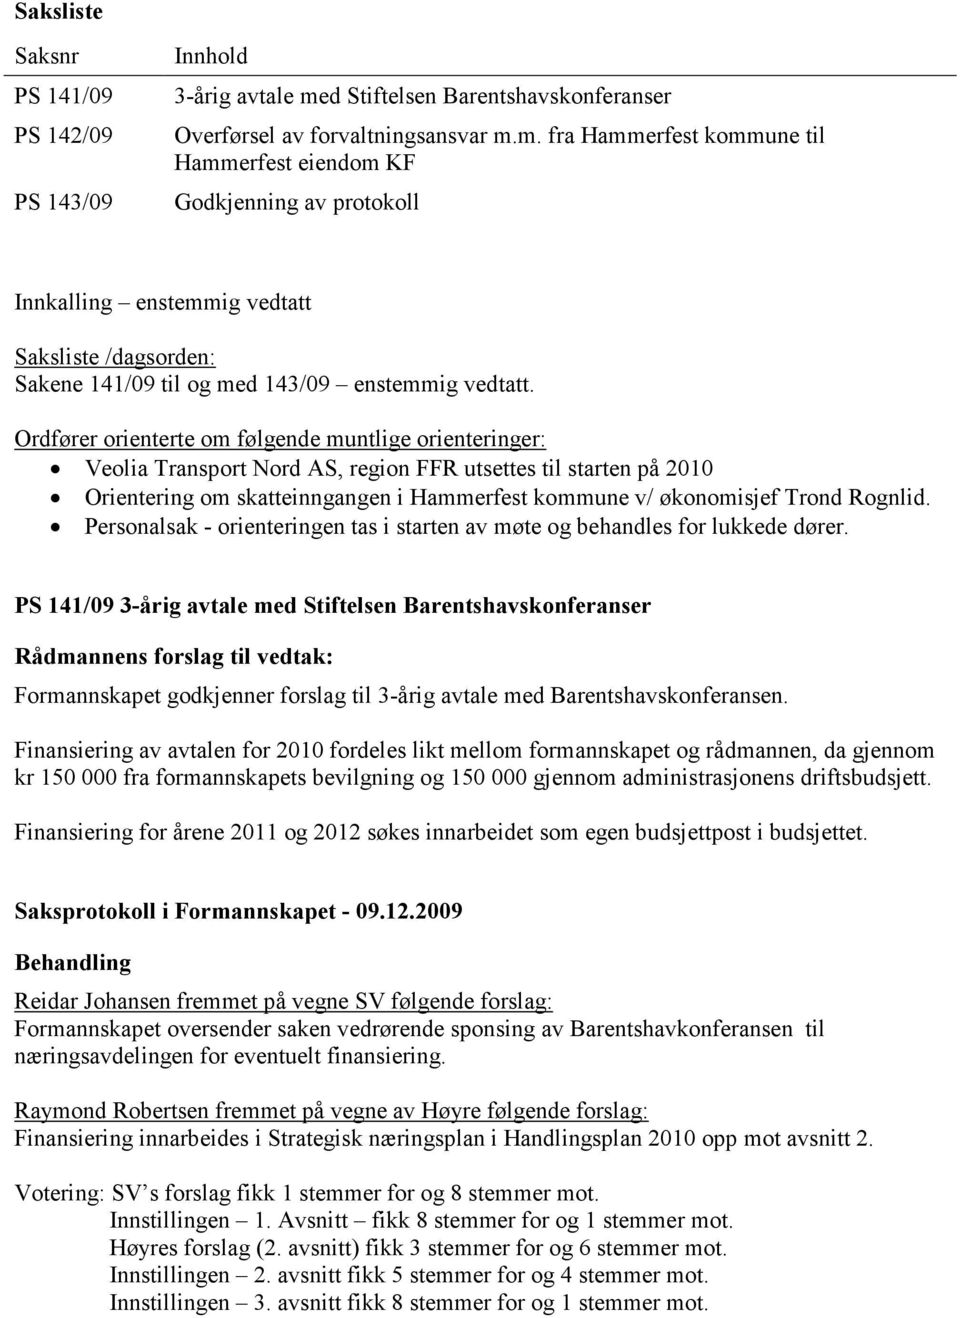 m. fra Hammerfest kommune til Hammerfest eiendom KF Godkjenning av protokoll Innkalling enstemmig vedtatt Saksliste /dagsorden: Sakene 141/09 til og med 143/09 enstemmig vedtatt.